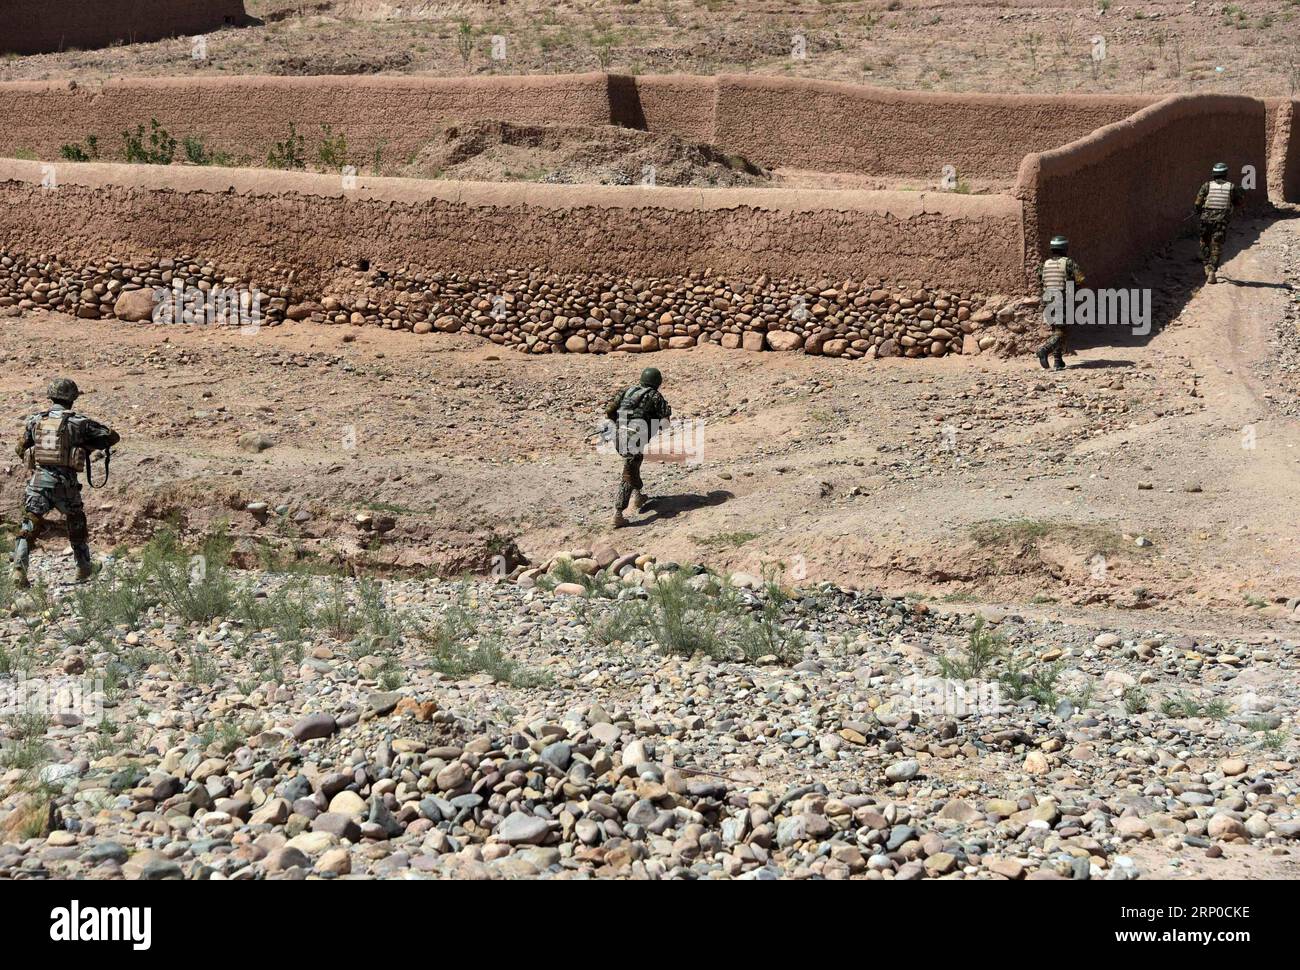 (180506) -- TIRIN KOT, 6. Mai 2018 -- afghanische Sicherheitskräfte nehmen an einer Militäroperation in Tirin Kot, Hauptstadt der Provinz Uruzgan, Afghanistan, 5. Mai 2018 Teil. ) (wtc) AFGHANISTAN-URUZGAN-MILITÄROPERATION SanaullahxSeiam PUBLICATIONxNOTxINxCHN Stockfoto